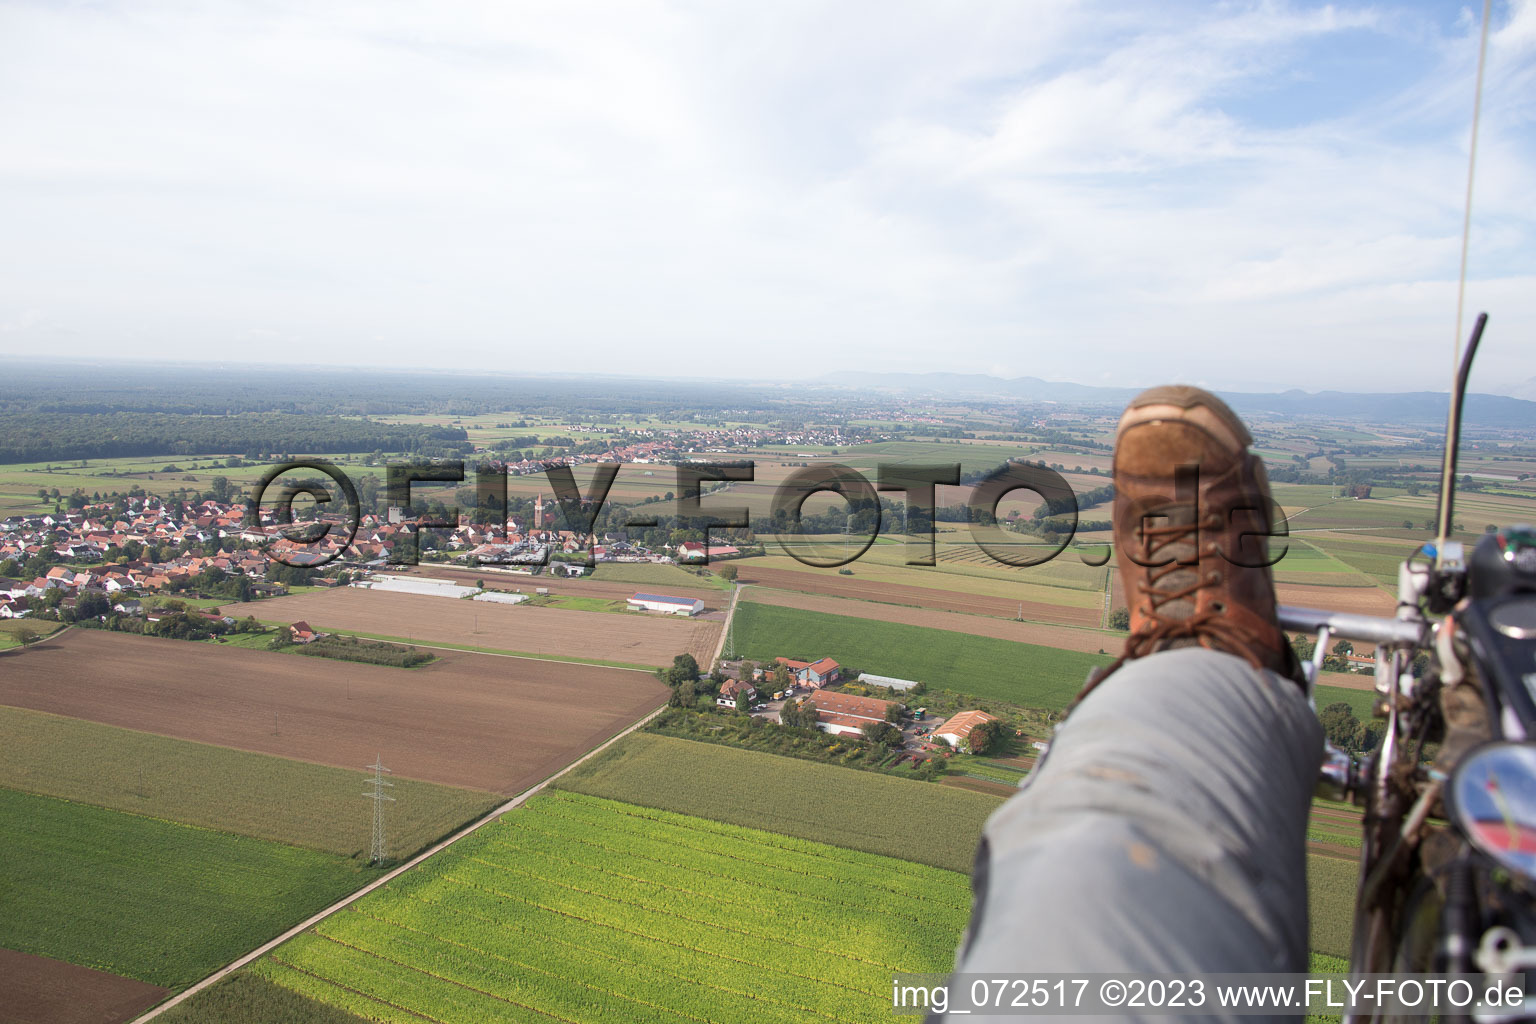 Minfeld dans le département Rhénanie-Palatinat, Allemagne vue du ciel